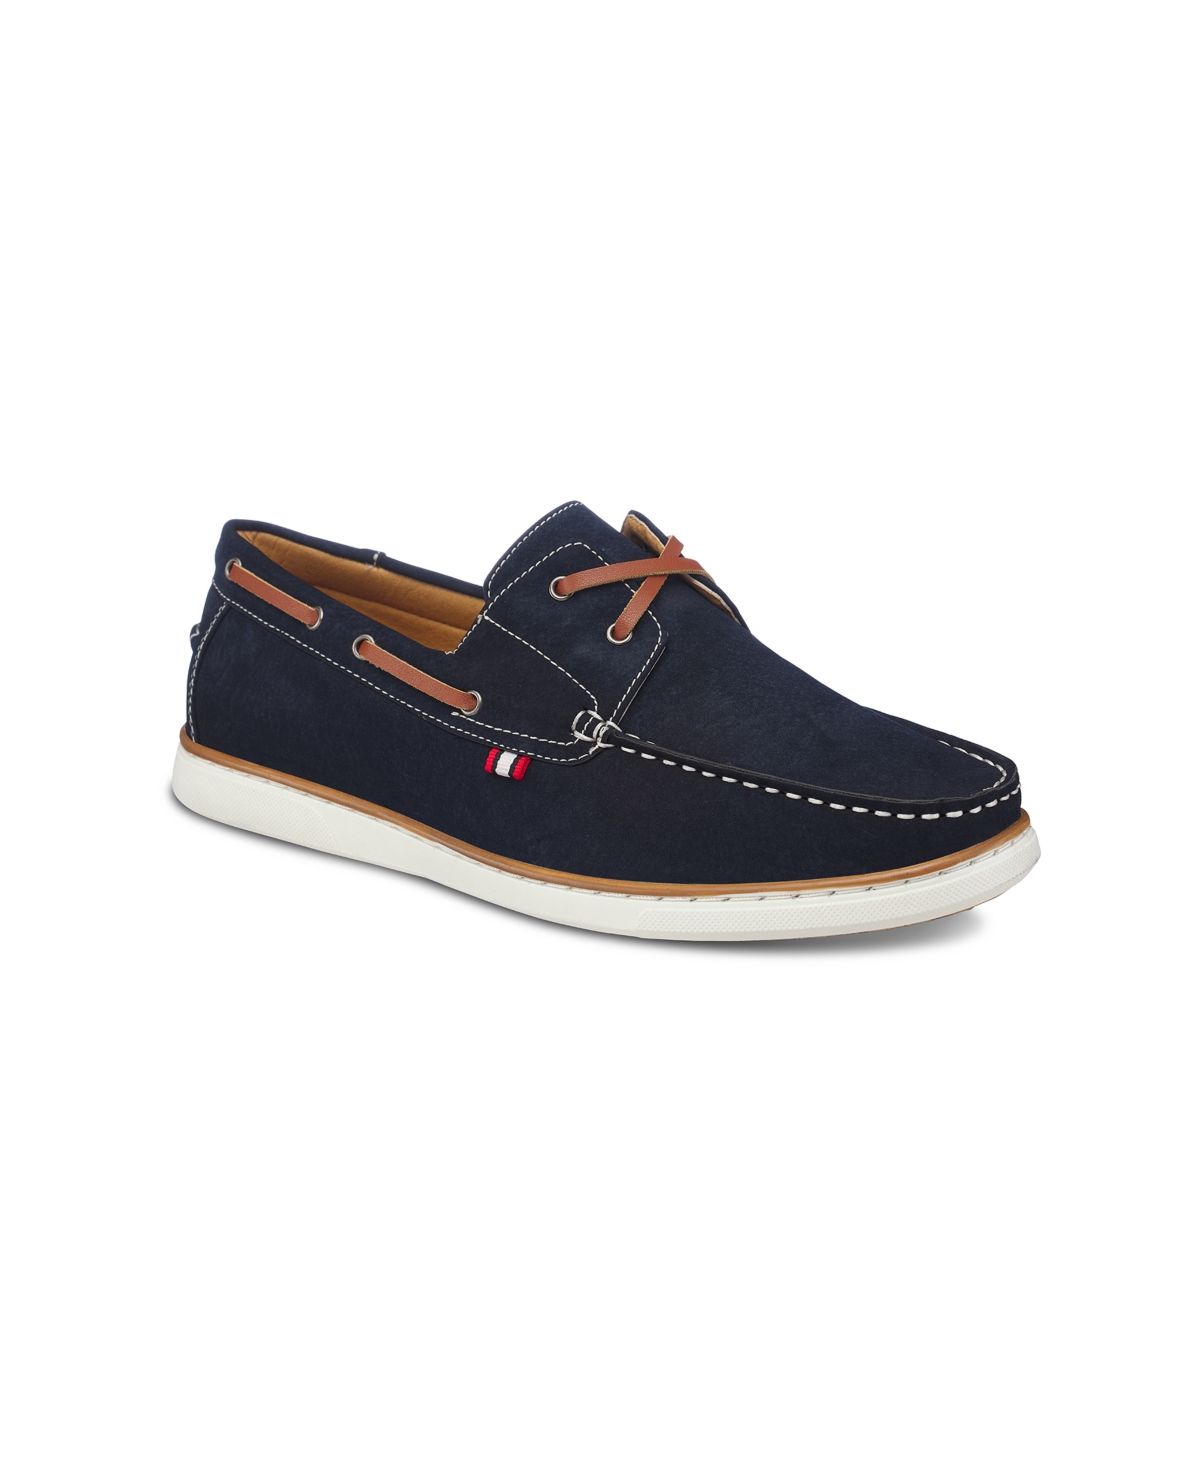 Men's Harbor Boat Shoes - Navy